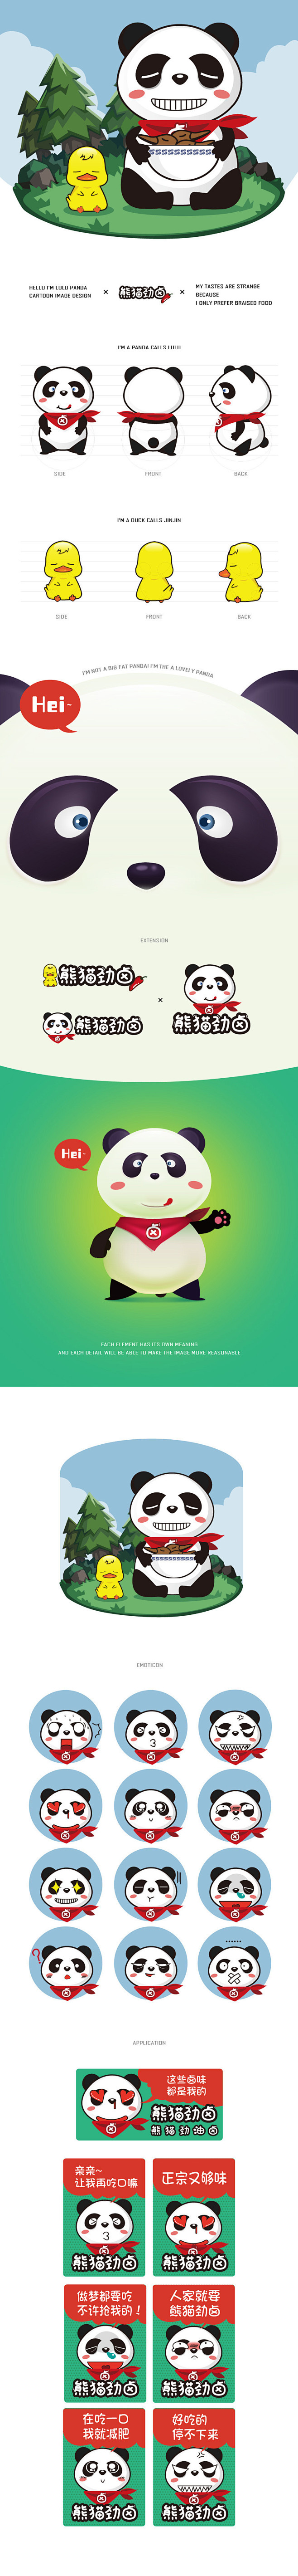 熊猫劲卤-吉祥物设计方案